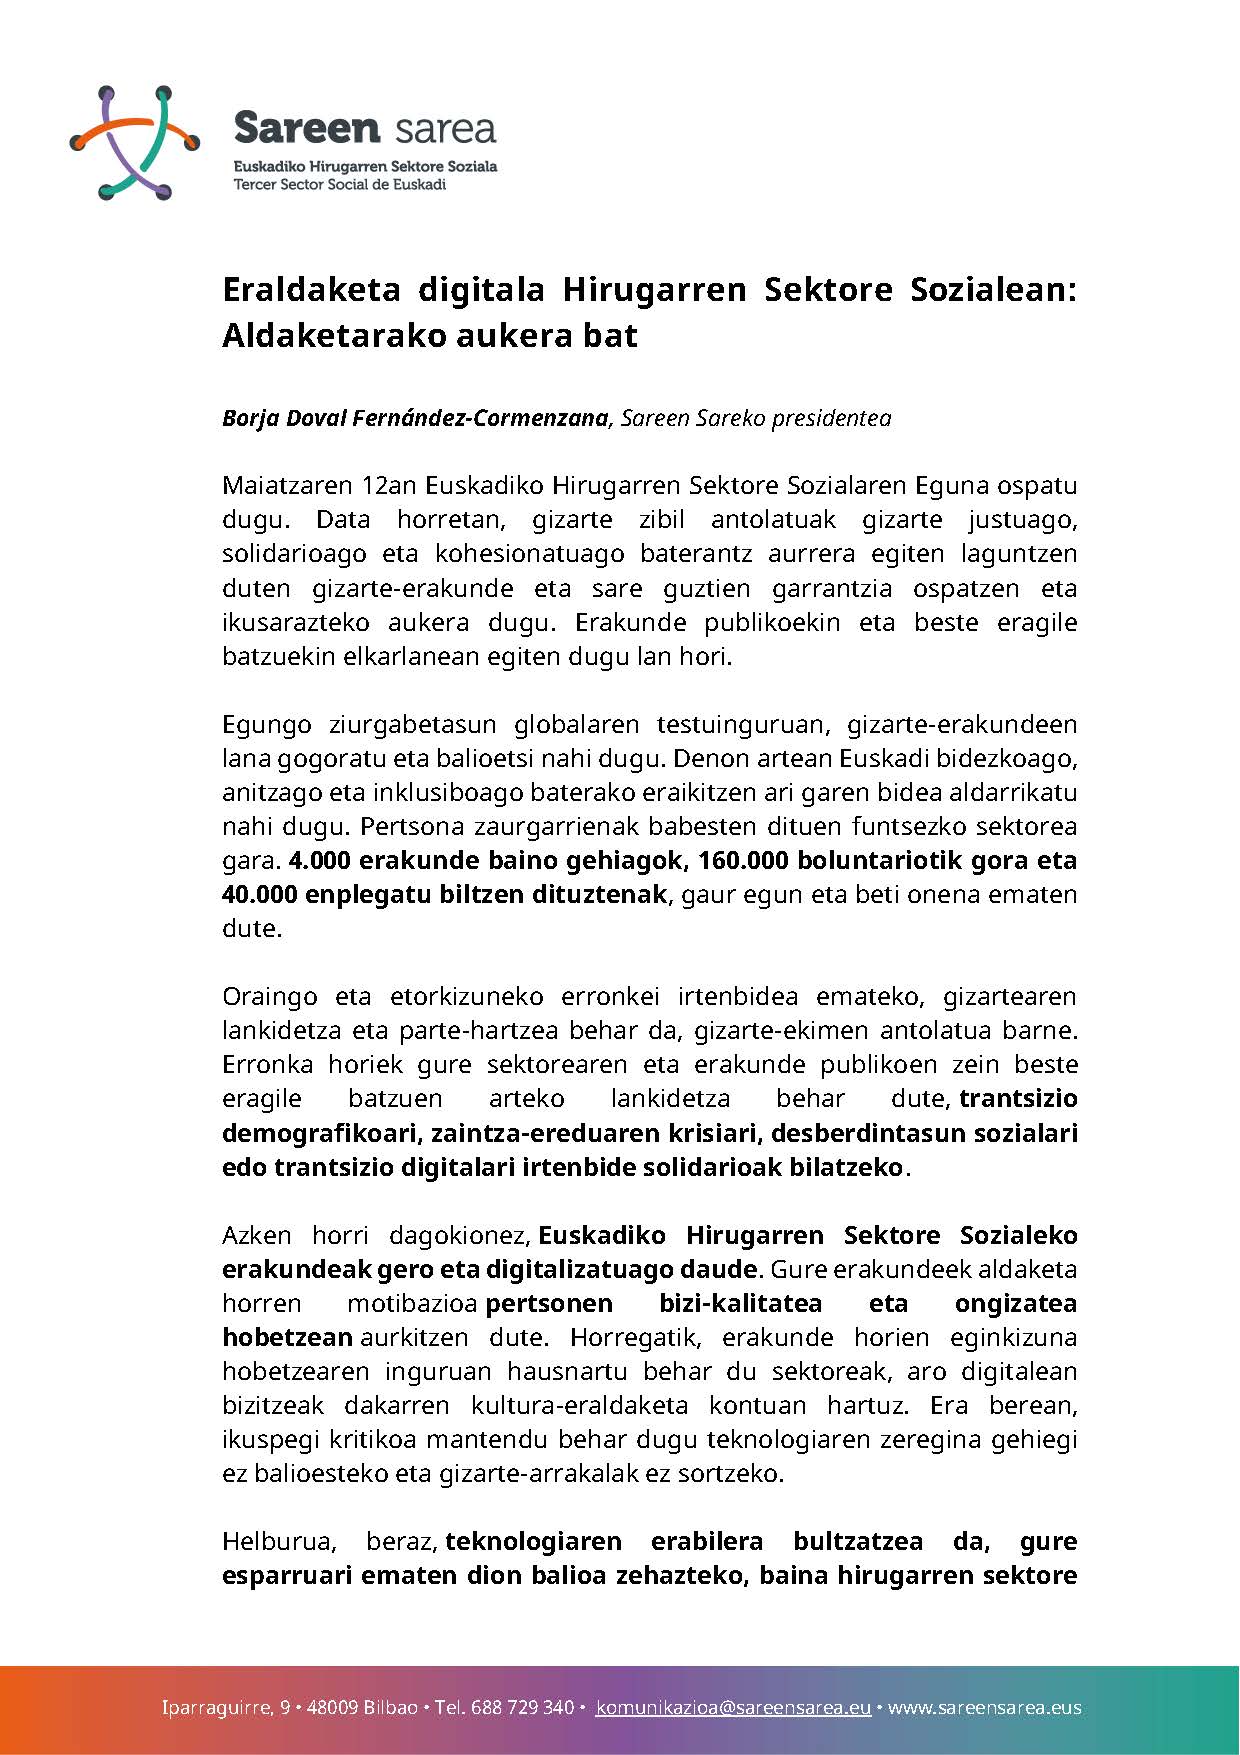 Iritzi artikulua: Eraldaketa digitala Euskadiko Hirugarren Sektore Sozialean